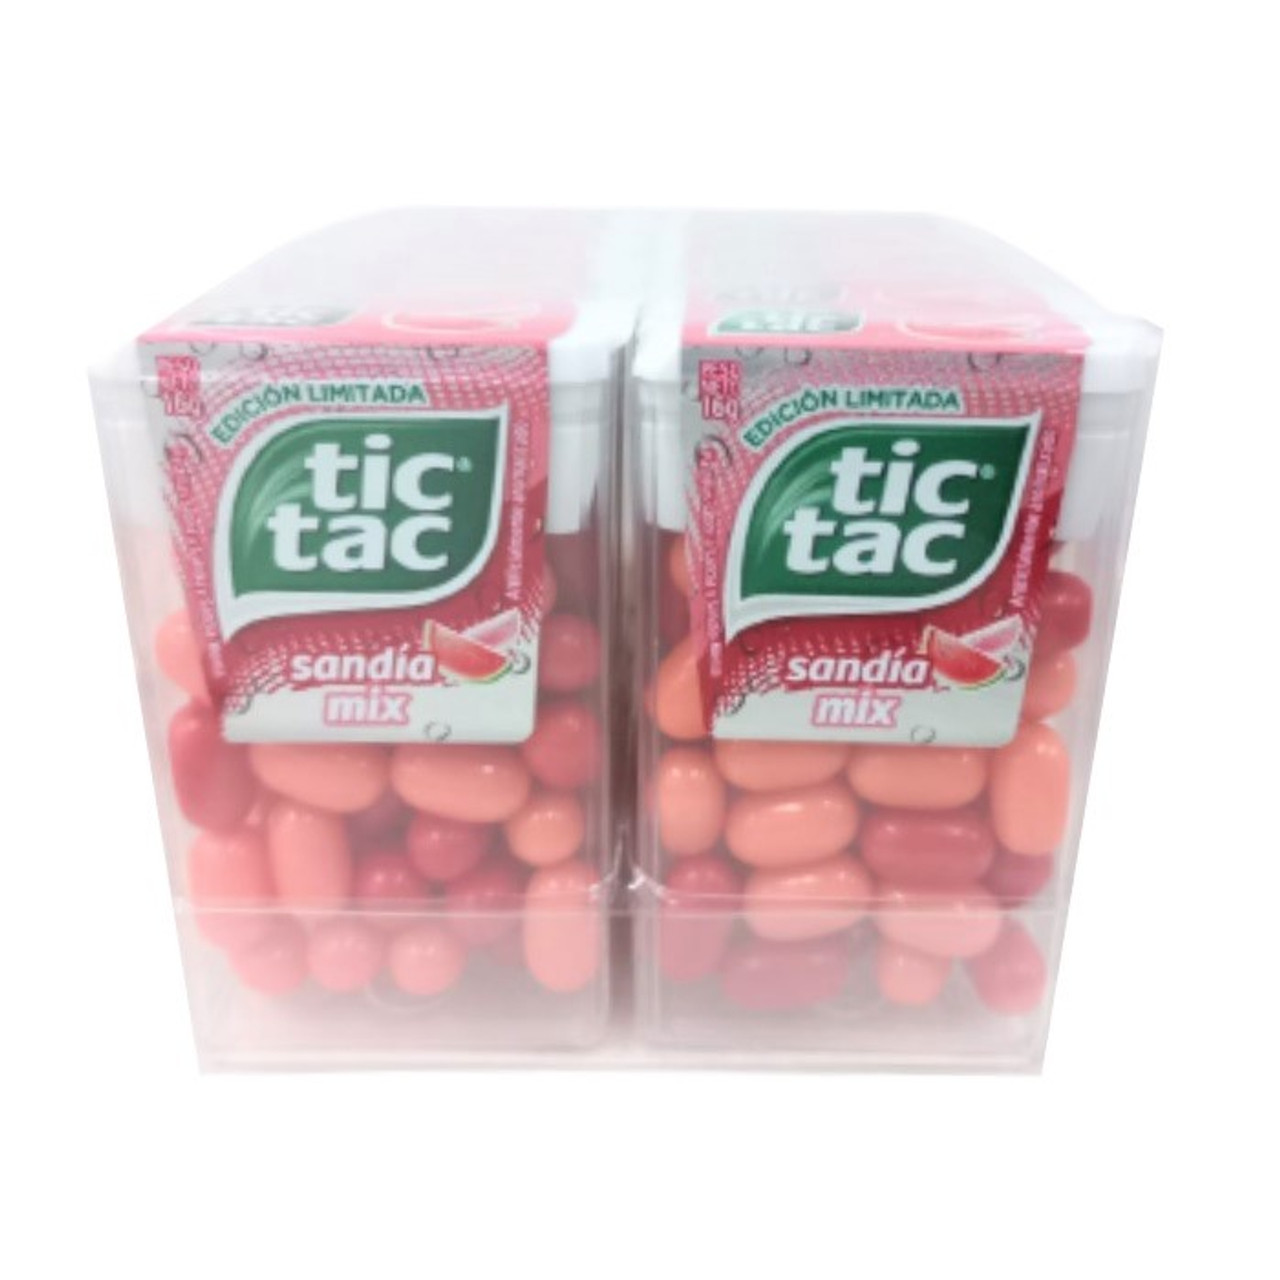 Tic Tac Pastillas Sandía Mix Fresh Breath Mints Watermelon Flavor Candies,  16 g / 0.56 oz ea (